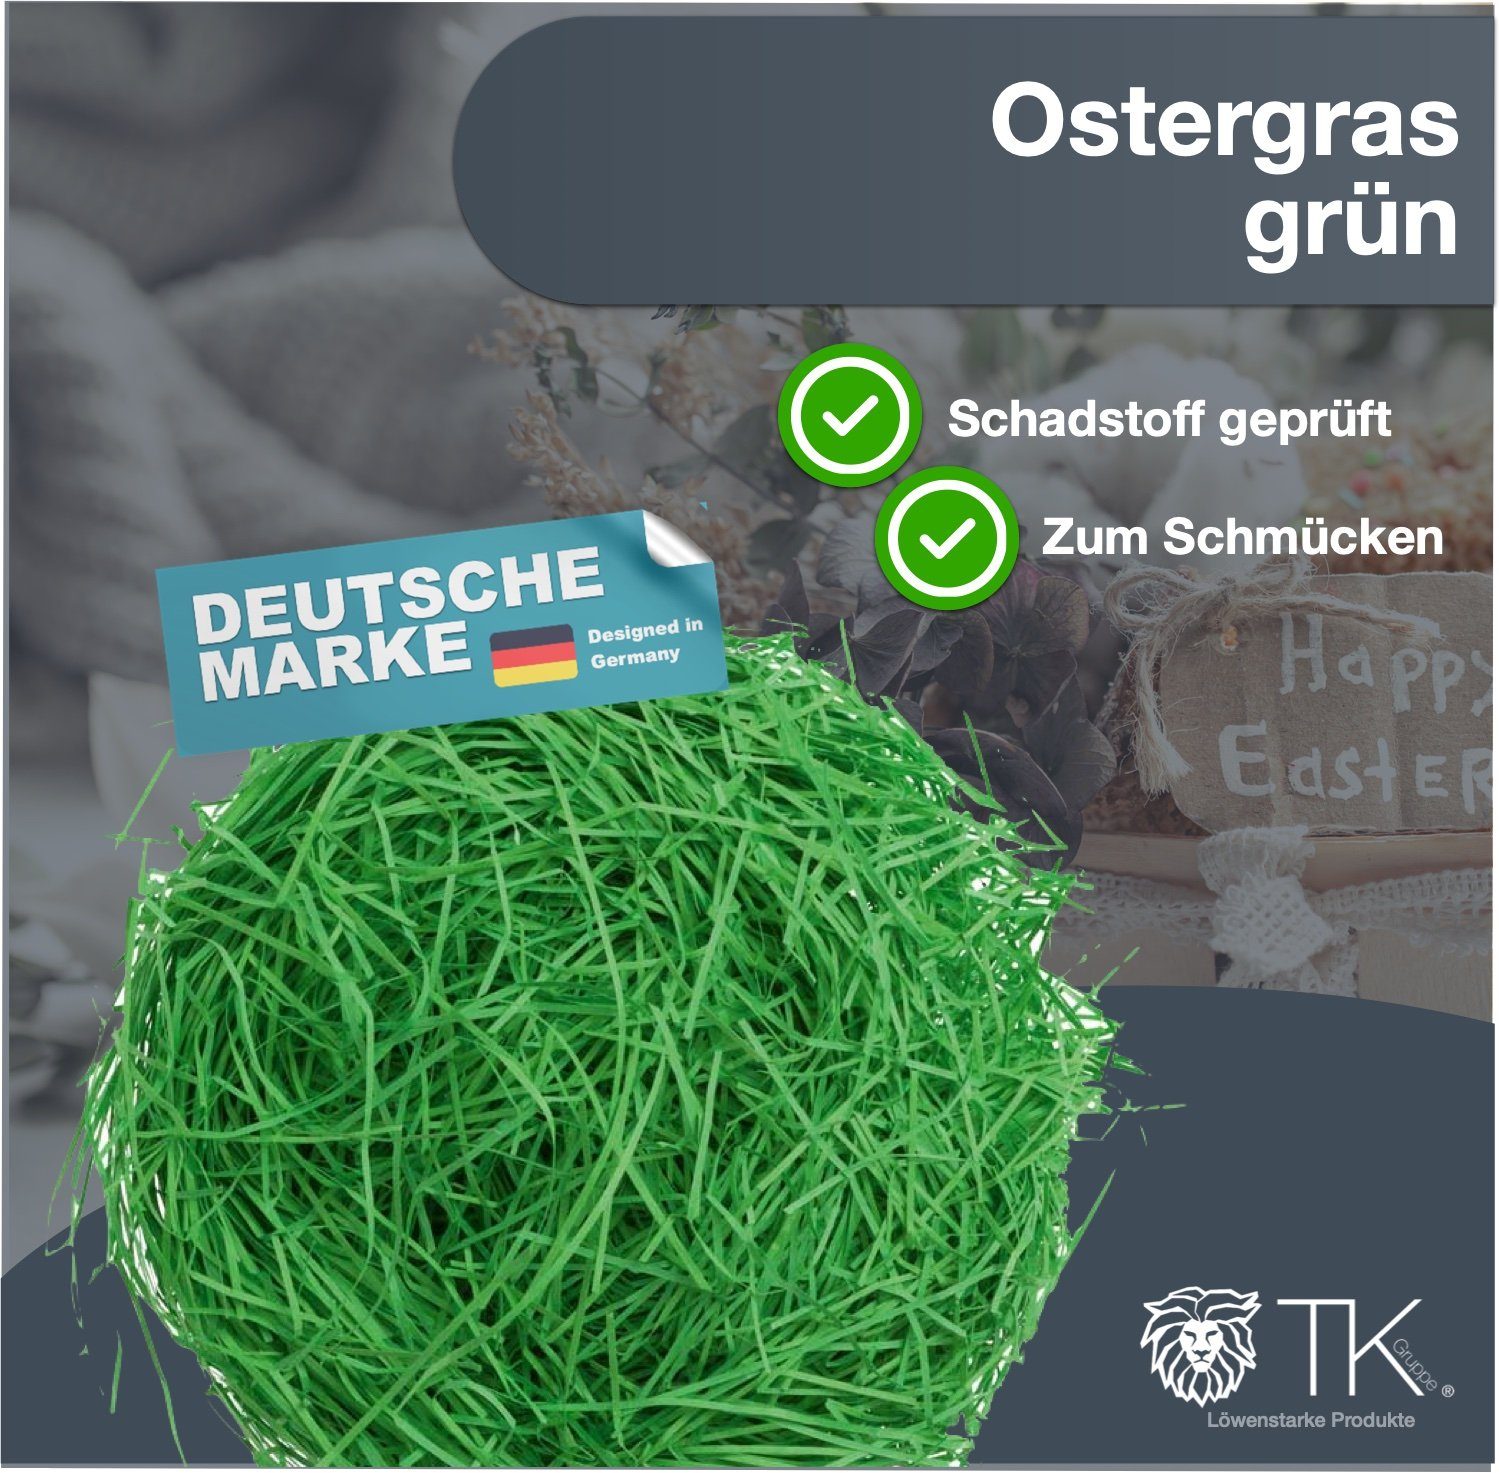 Deko Osternest Dekoration TK Ostern 50gr. Ostergras Gruppe grün 3x Gras